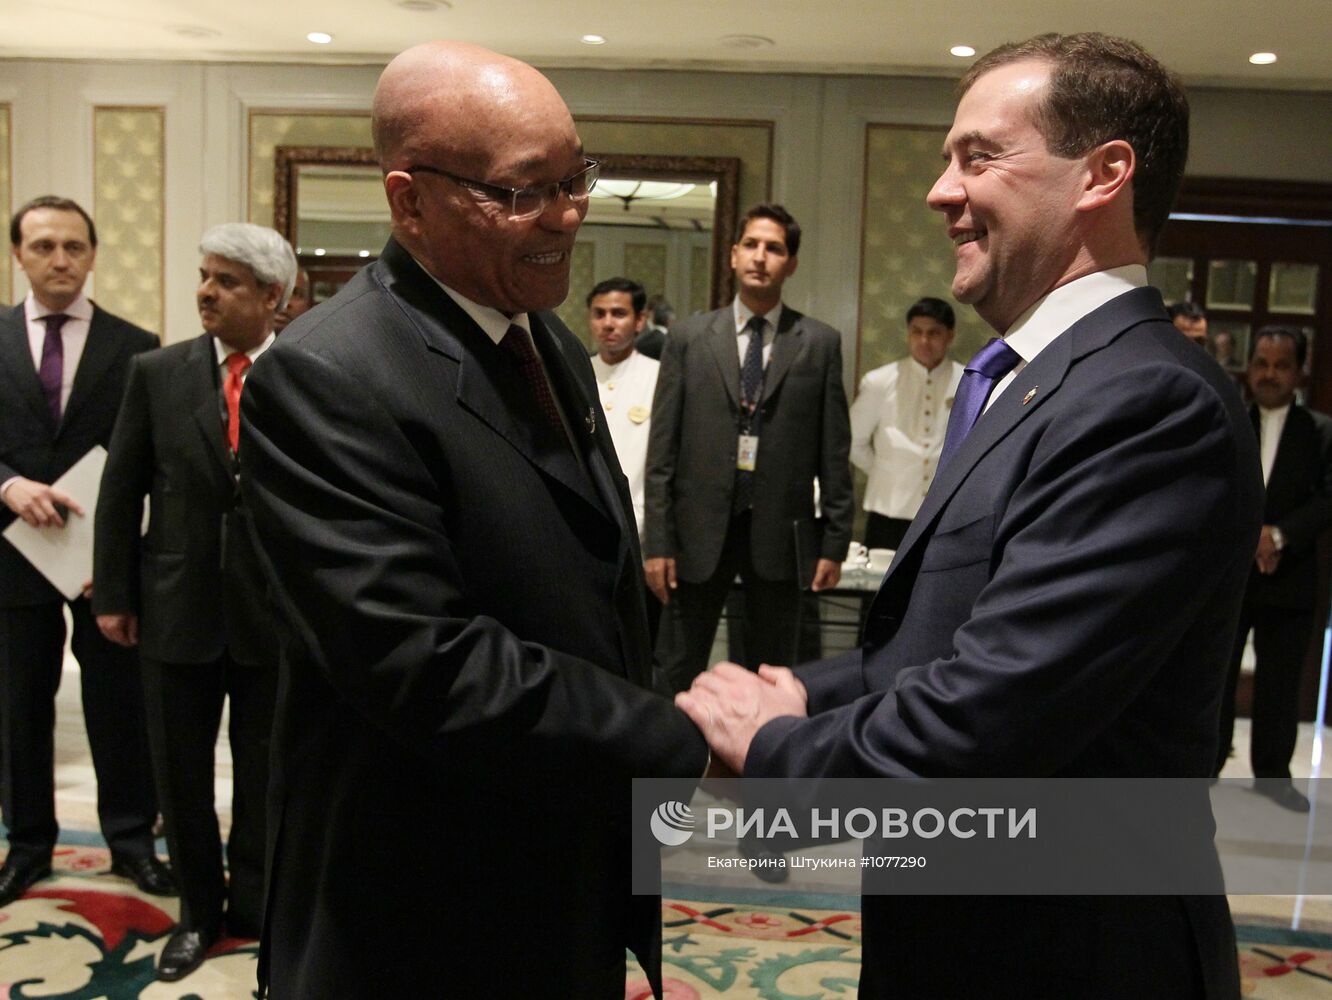 Встреча Д.Медведева и Д.Зумы в Нью-Дели